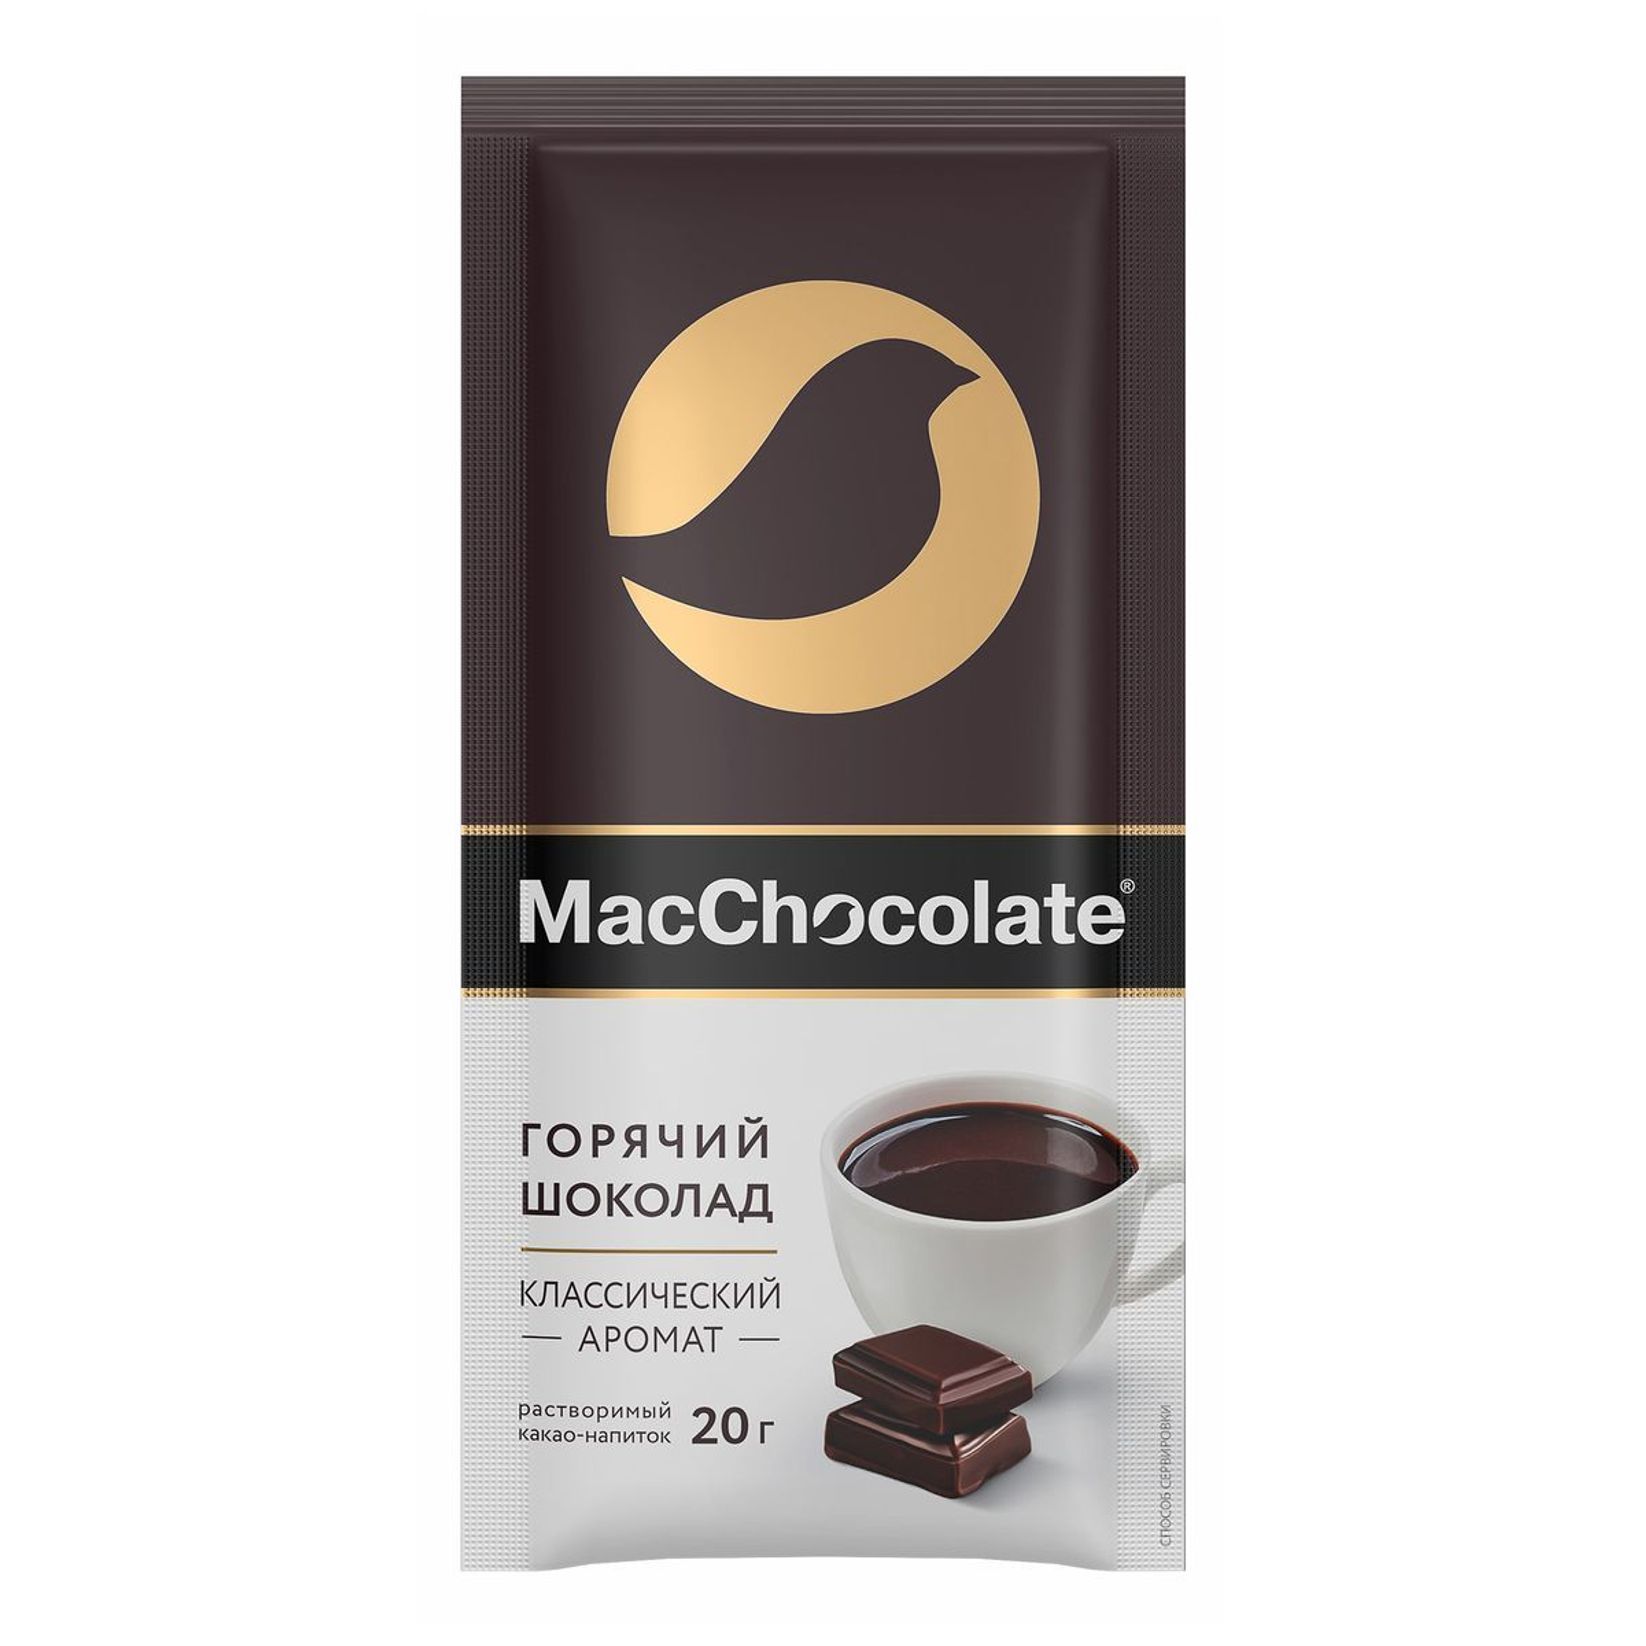 Купить горячий шоколад в пакетиках. Какао-напиток растворимый "MACCHOCOLATE" горячий шоколад, 20 г. Горячий шоколад MACCHOCOLATE 20г. MACCHOCOLATE горячий шоколад 20. Горячий шоколад в пакетиках MACCHOCOLATE классический.